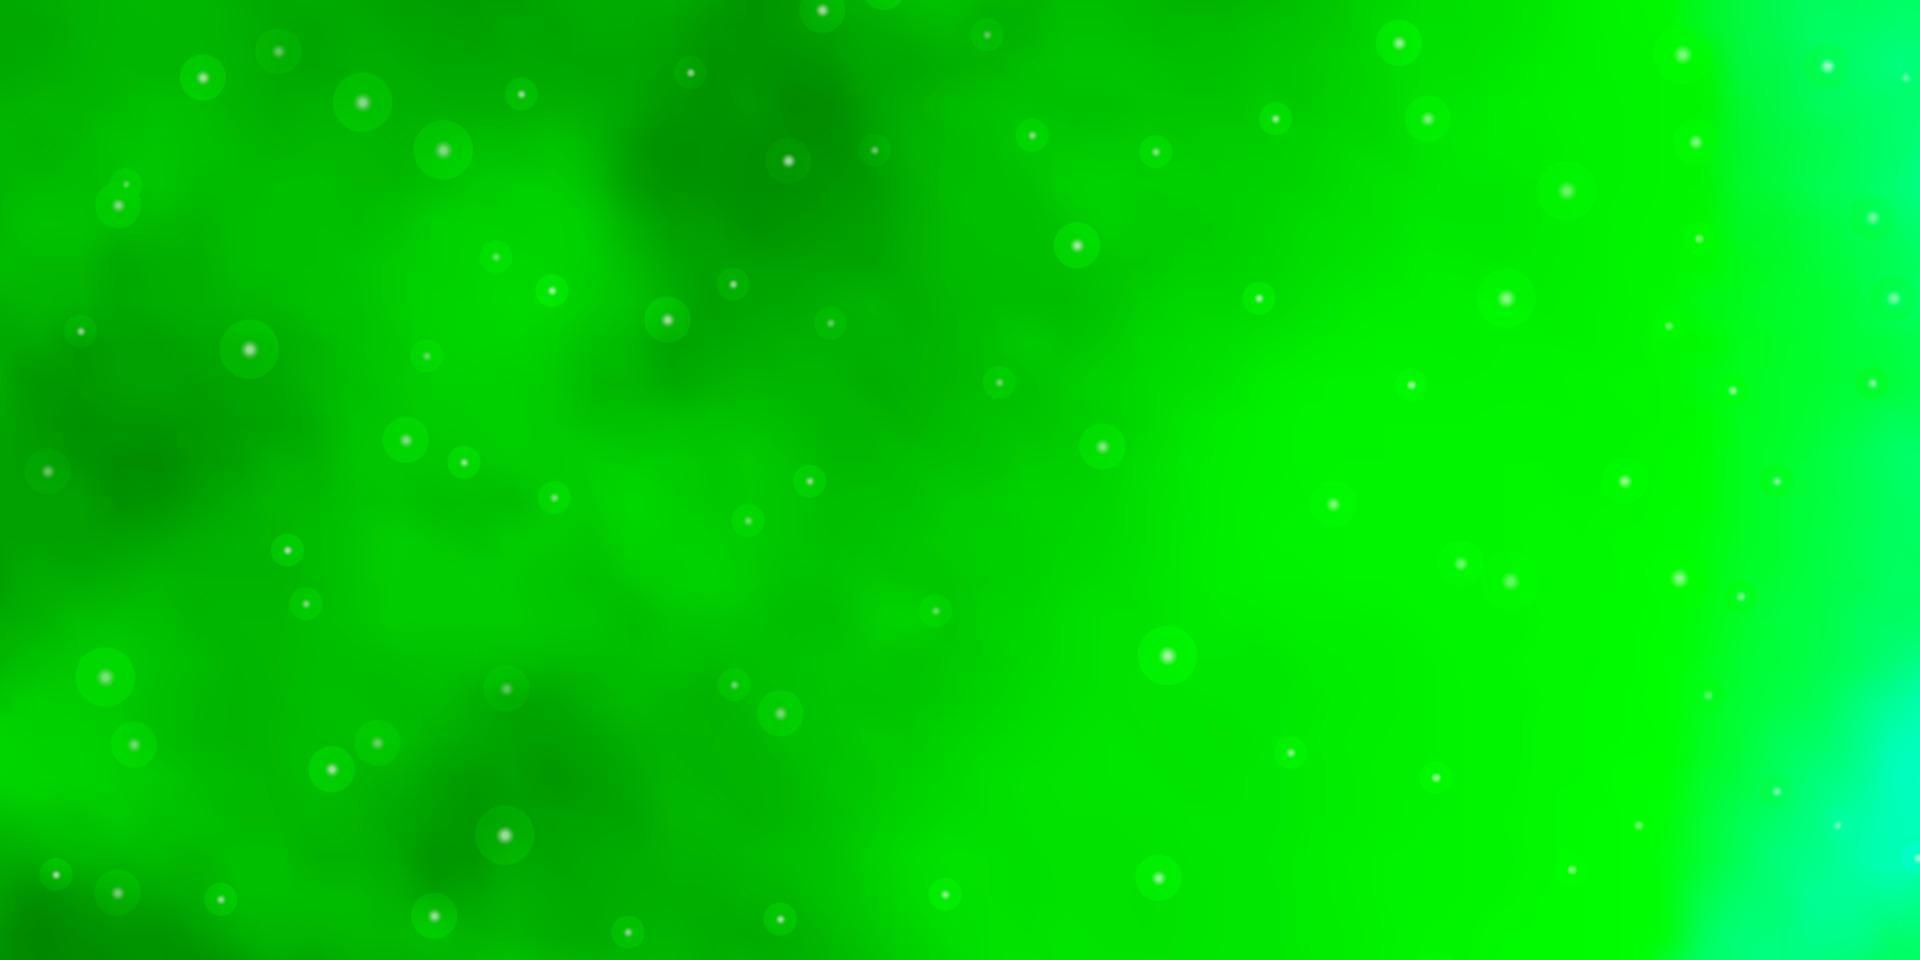 sfondo vettoriale verde chiaro con stelle colorate.